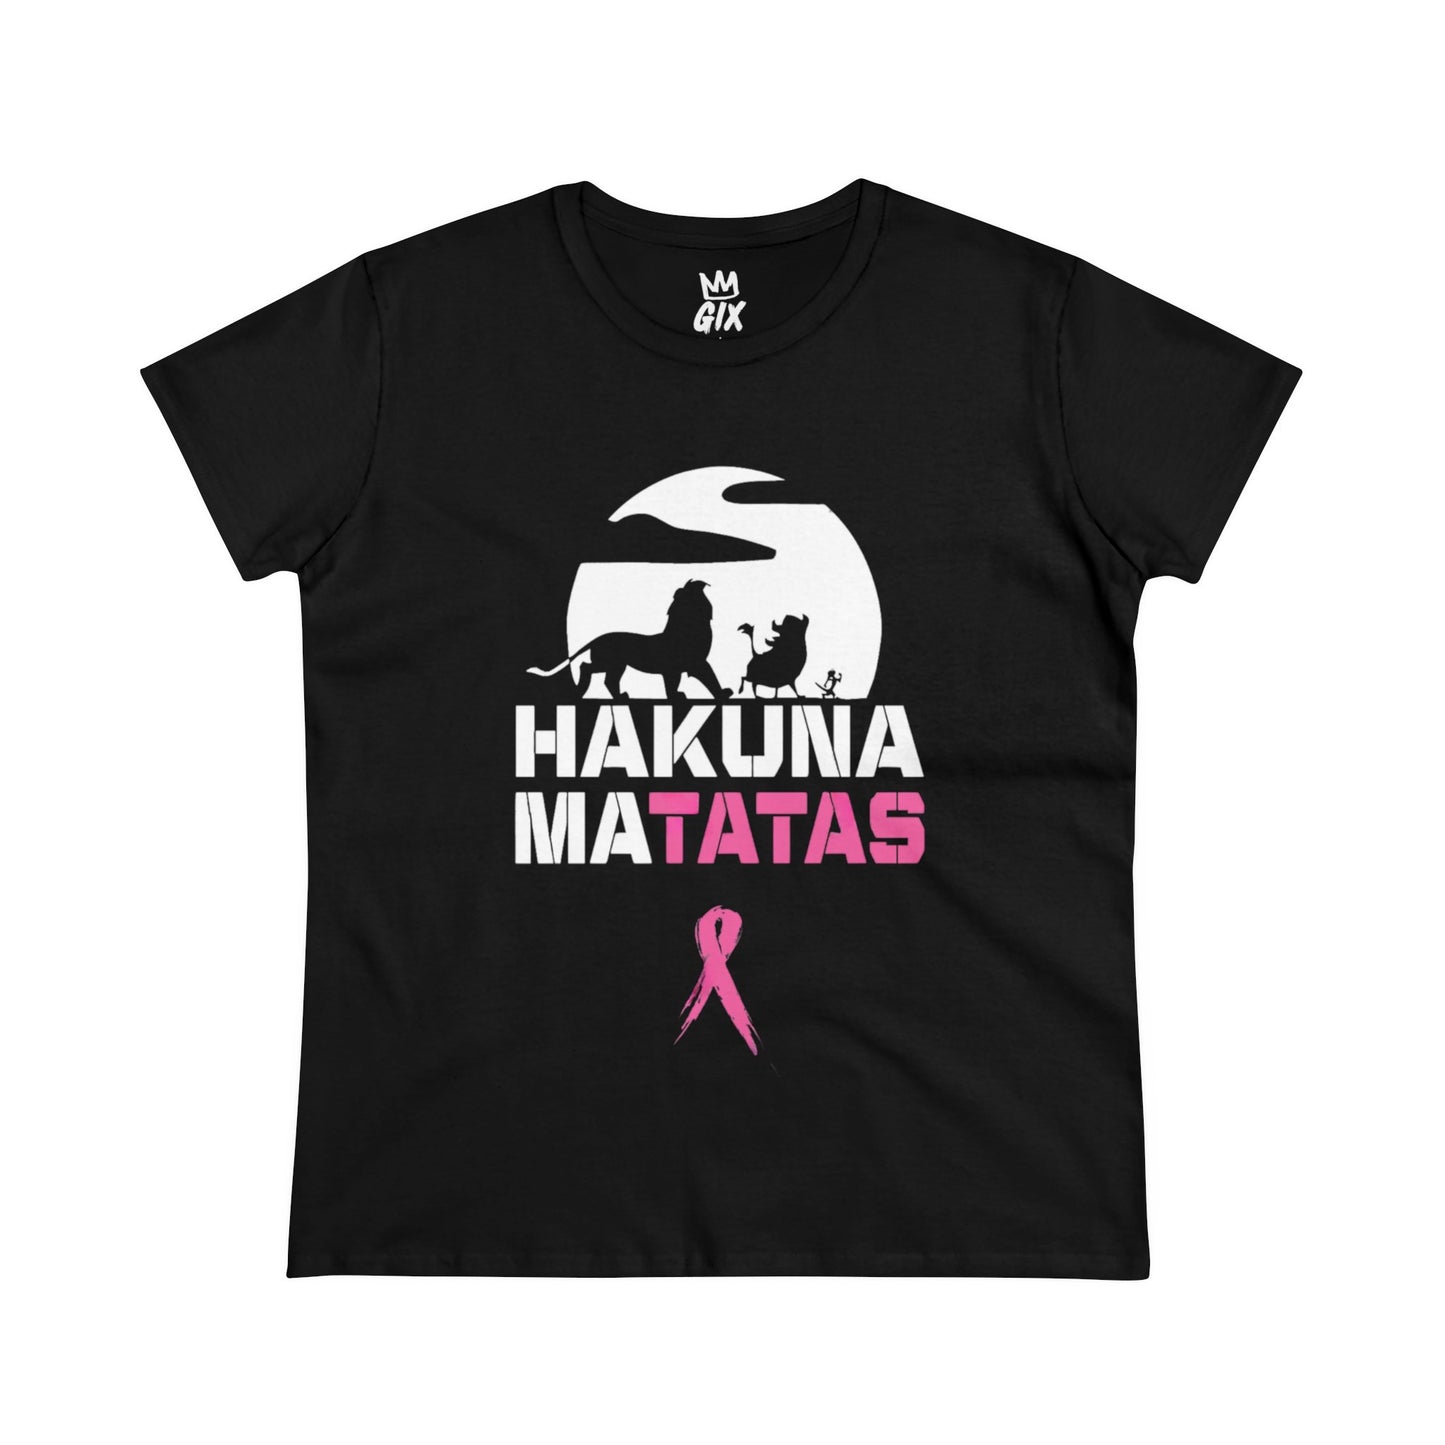 Hakuna Matatas - Women's Midweight Cotton Tee